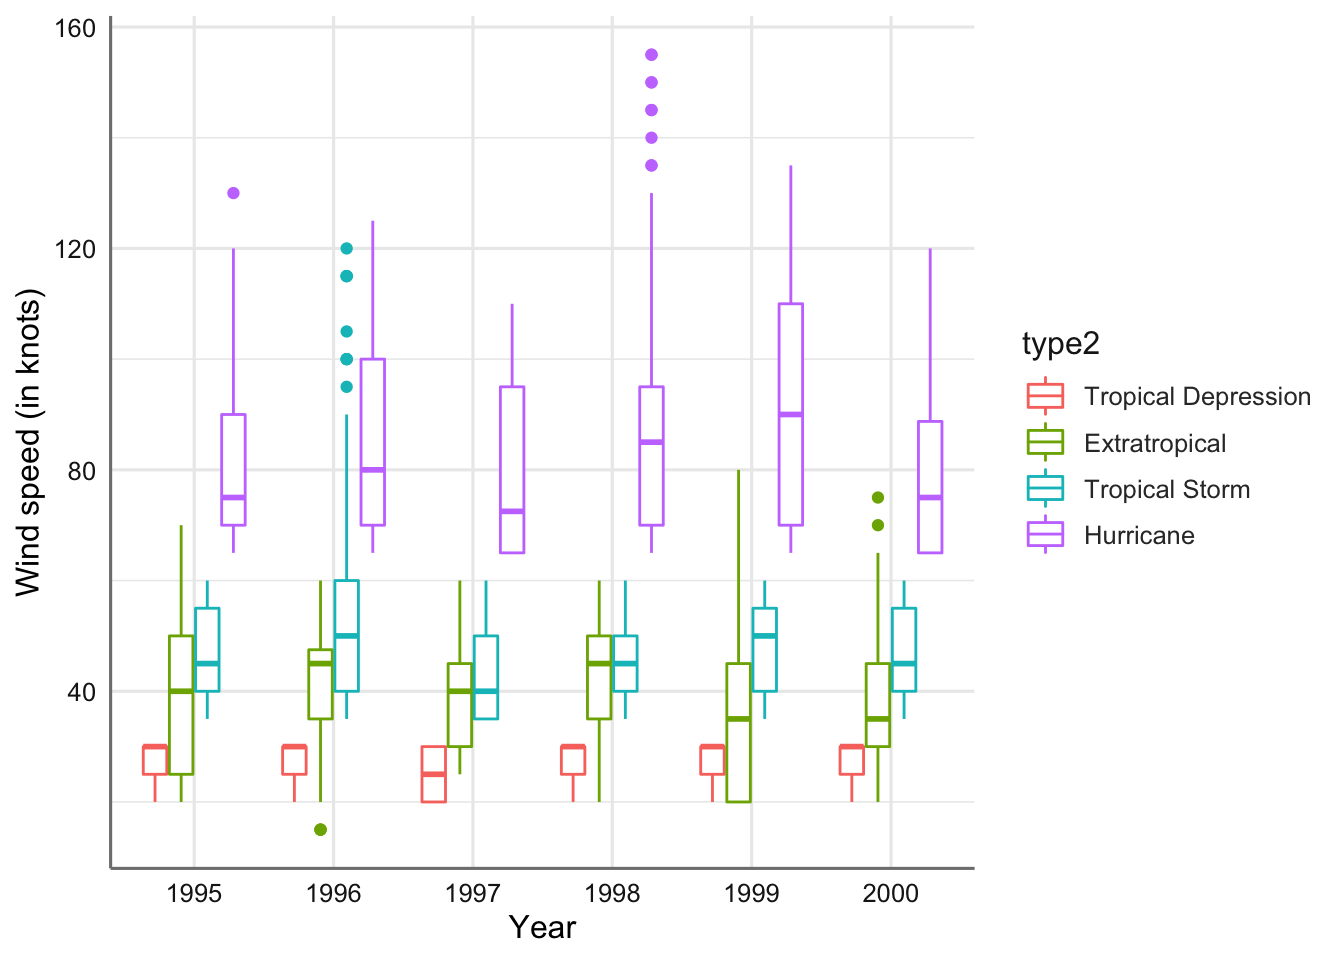 Gráfico de cajas de la velocidad del viento para cada tipo de tormenta y año (versión 2).